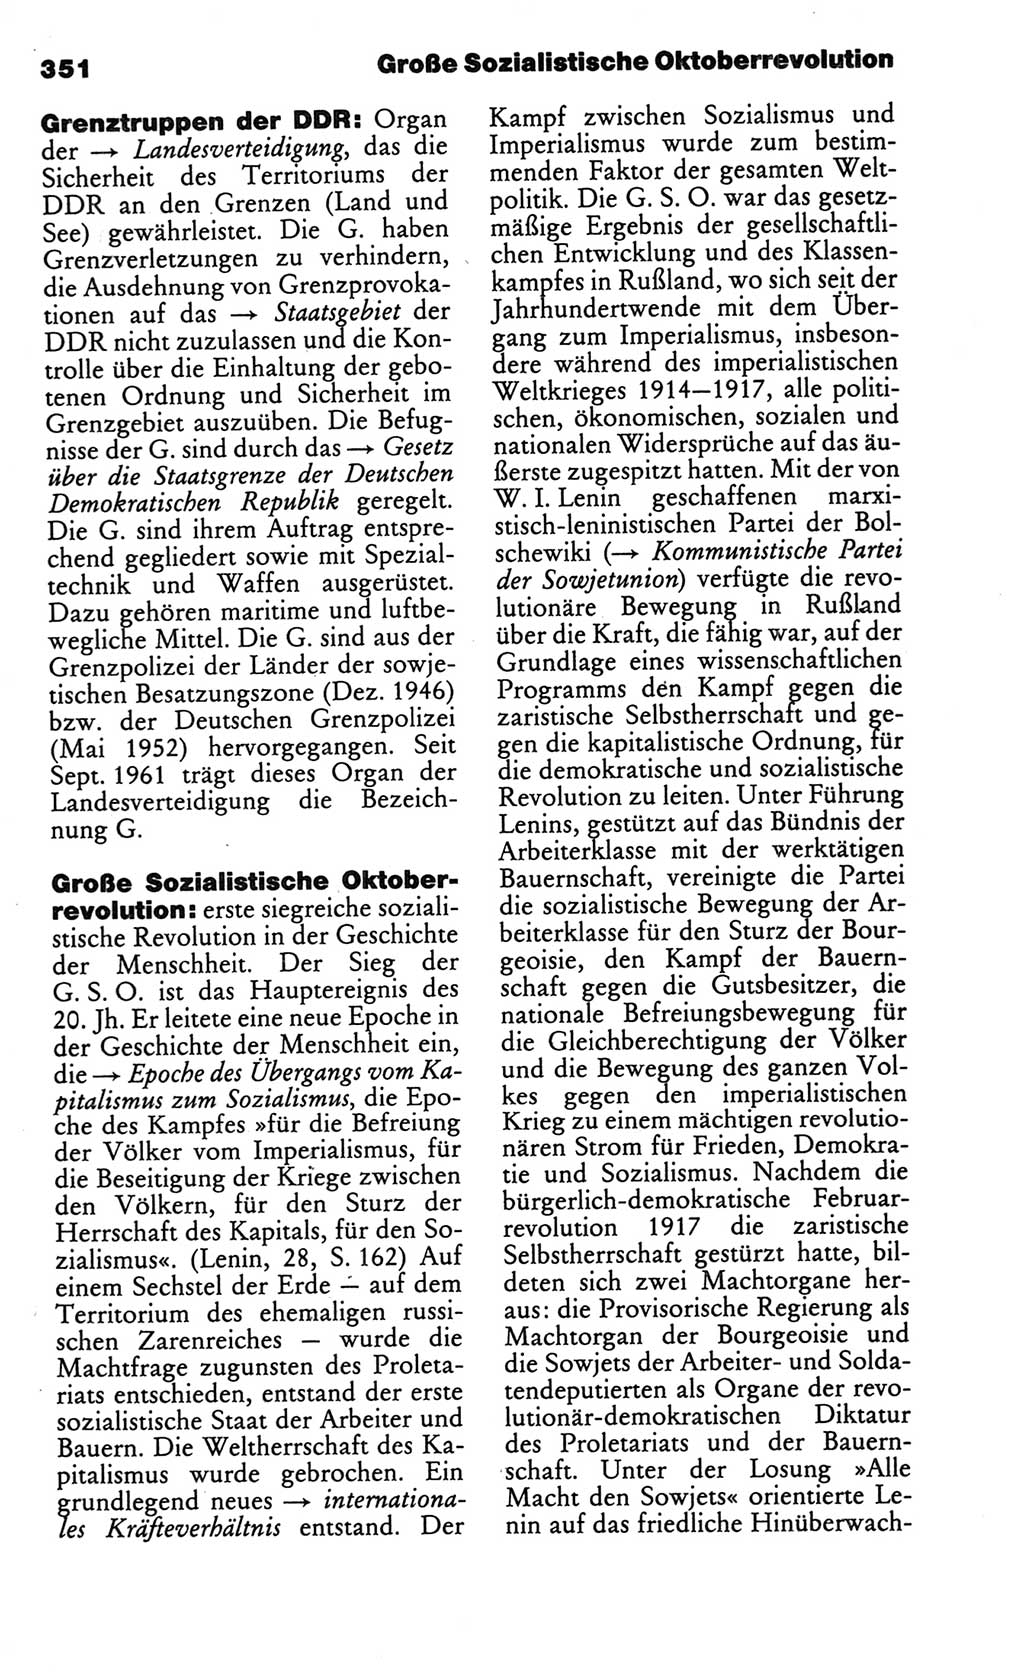 Kleines politisches Wörterbuch [Deutsche Demokratische Republik (DDR)] 1986, Seite 351 (Kl. pol. Wb. DDR 1986, S. 351)